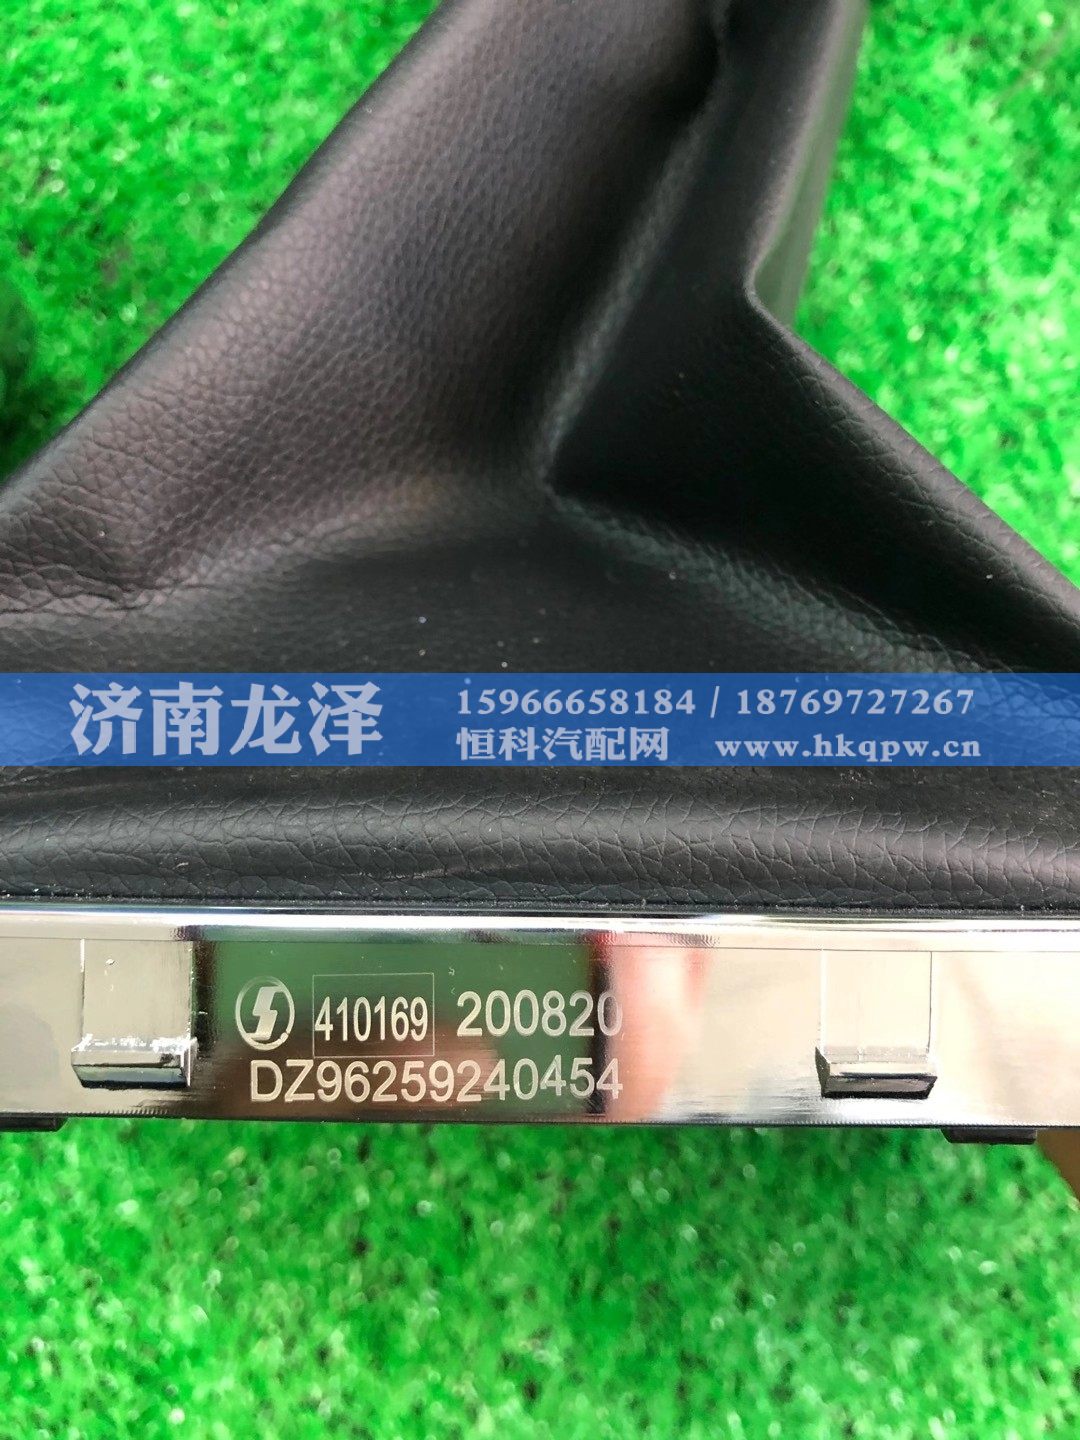 DZ96259240454,陕汽原厂皮革防尘套,山东弗壳润滑科技有限公司